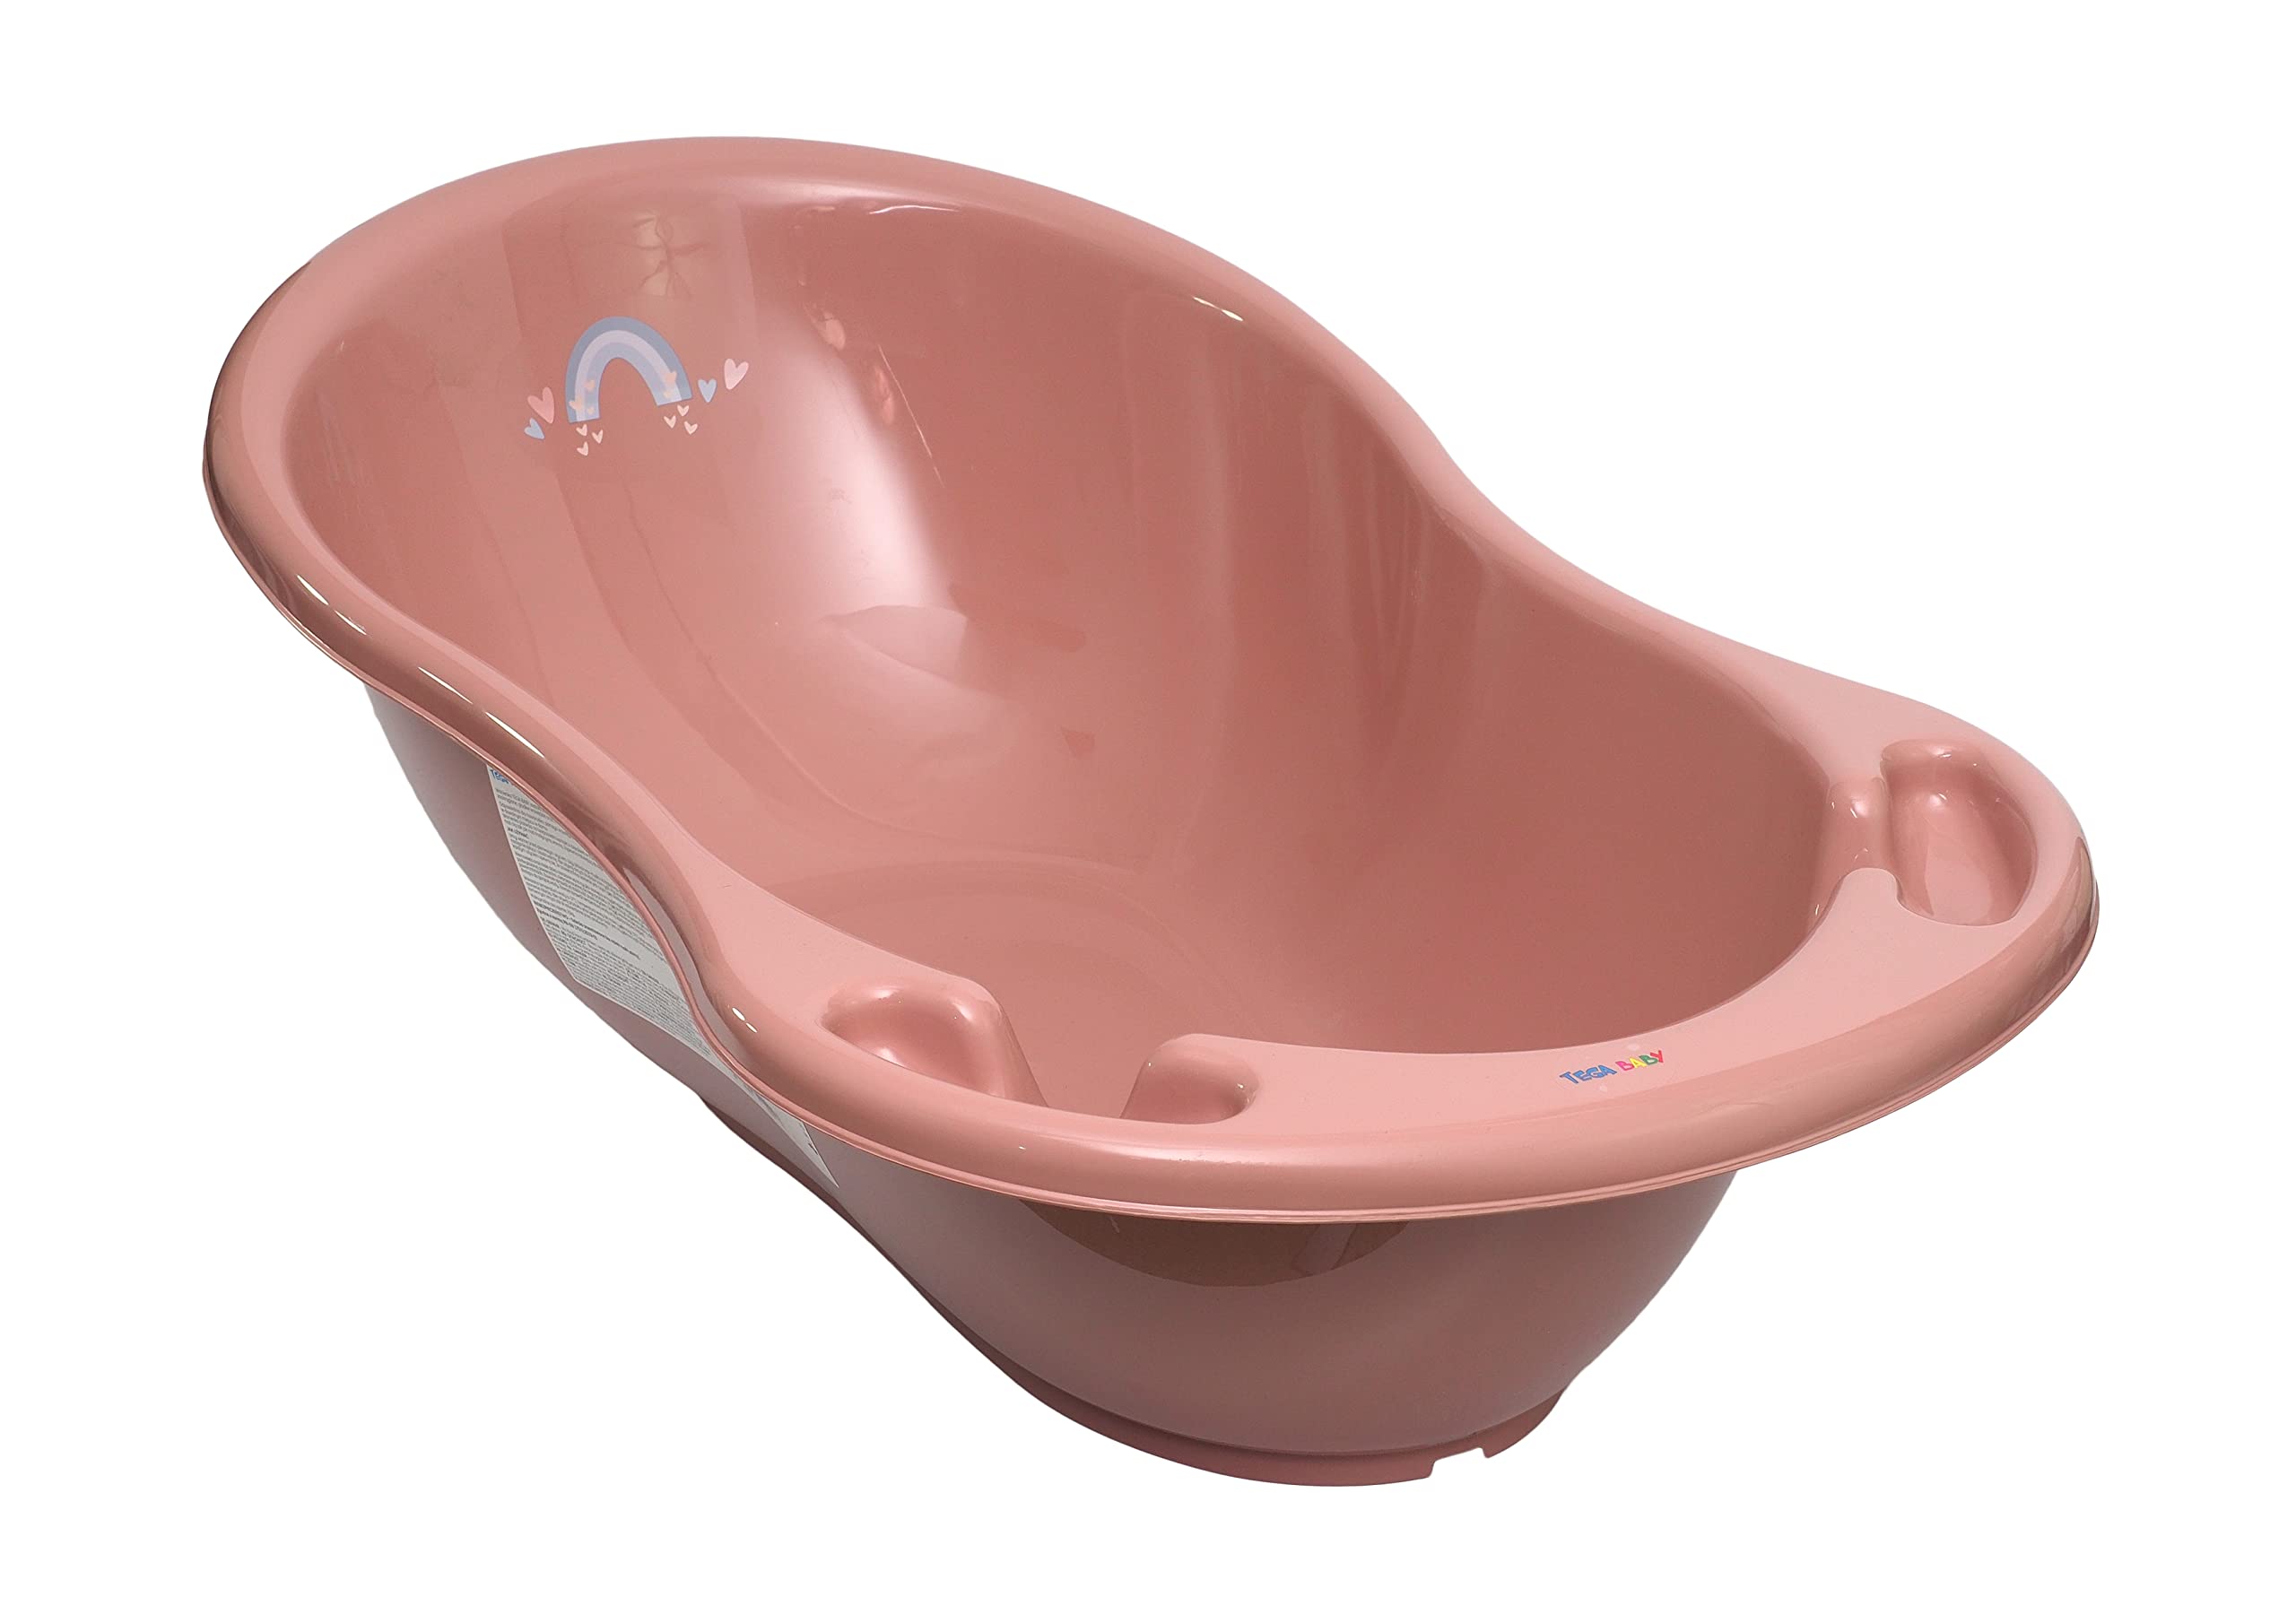 TEGA BABY kleine Kinderbadewanne für Säuglinge und Kleinkinder anatomische Form mit Ablauföffnung und Stöpsel TÜV-zertifiziert strapazierfähiger Kunststoff leicht zu reinigen 86x57cm rosa